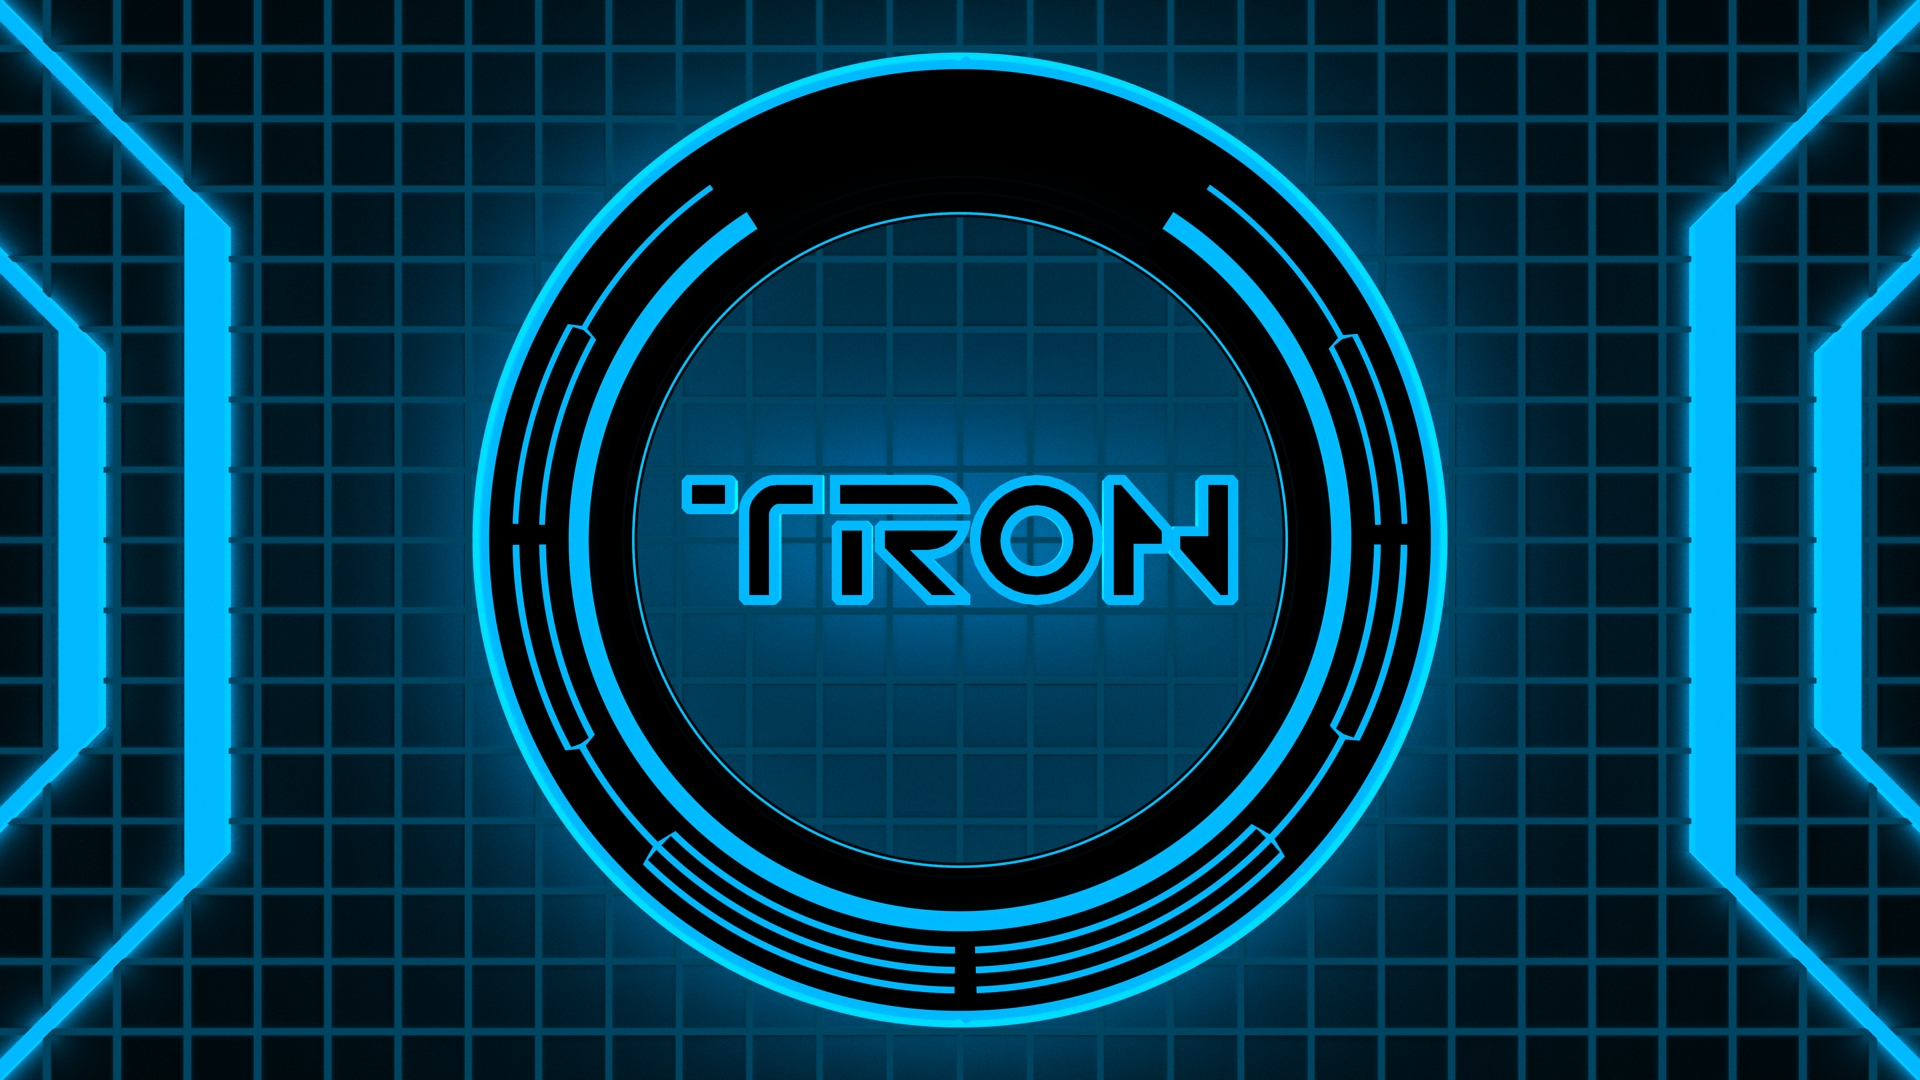 Tron HD Impressive Wallpaper Free HD Wallpaper - Download Tron HD ...